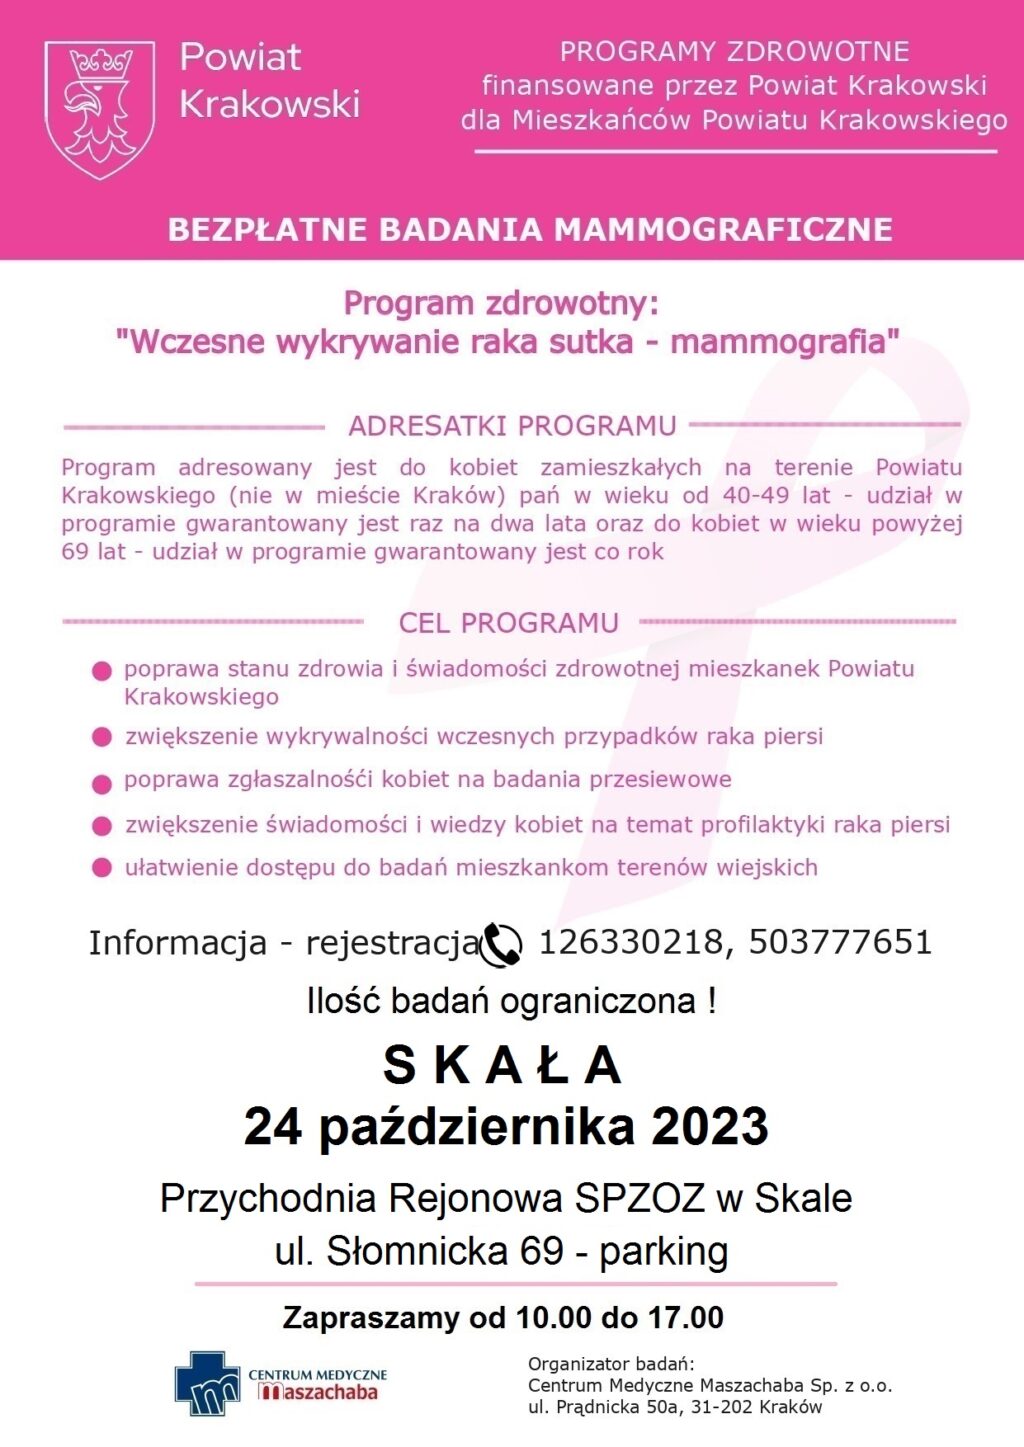 plakat informujacy, że 24.10.2023 odbędzie się badanie mammograficzne w Skale, Parking obok Przychodni Rejonowej w Skale, ul. Słomnicka 69 - rejestracja pod numerem 12 633 02 18